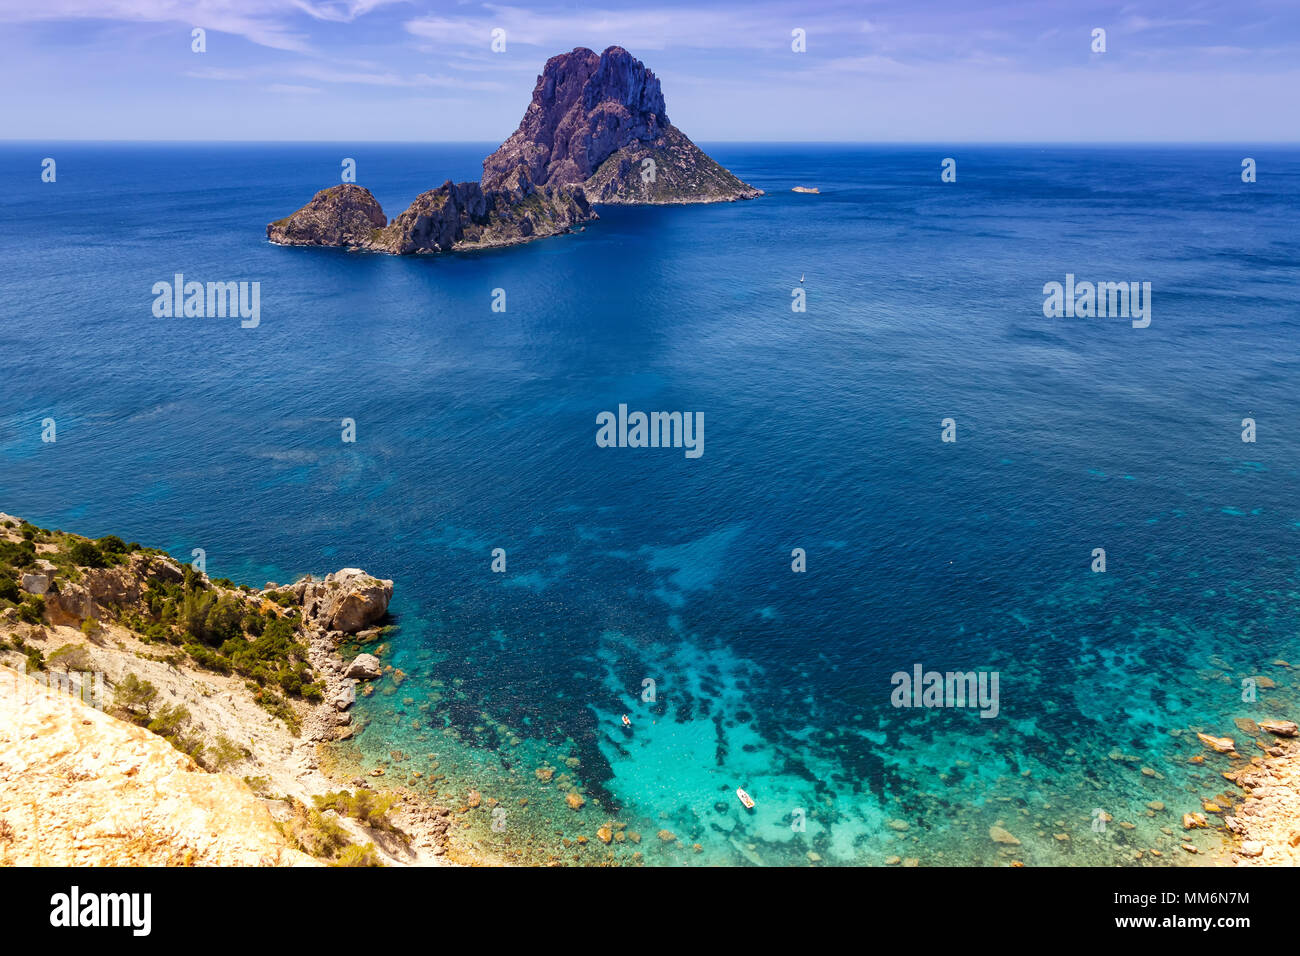 Isola di Ibiza spagna Es Vedra rock Mediterraneo viaggi baia mare vacanza viaggiare Foto Stock